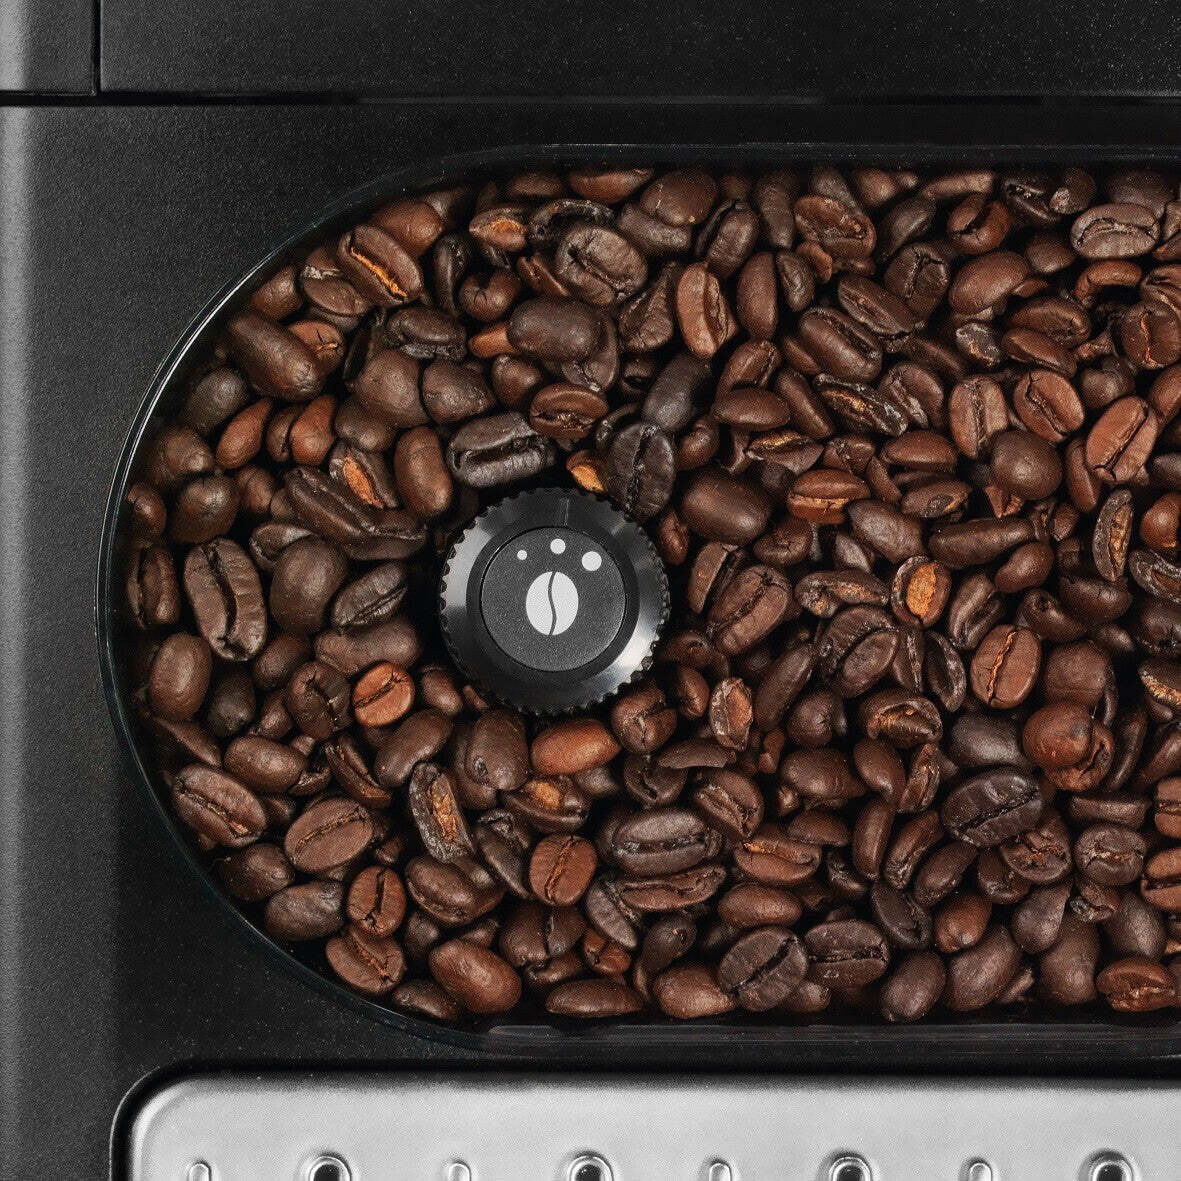 Automatický kávovar Krups Essential EA810570 VADA VZHĽADU, ODREN